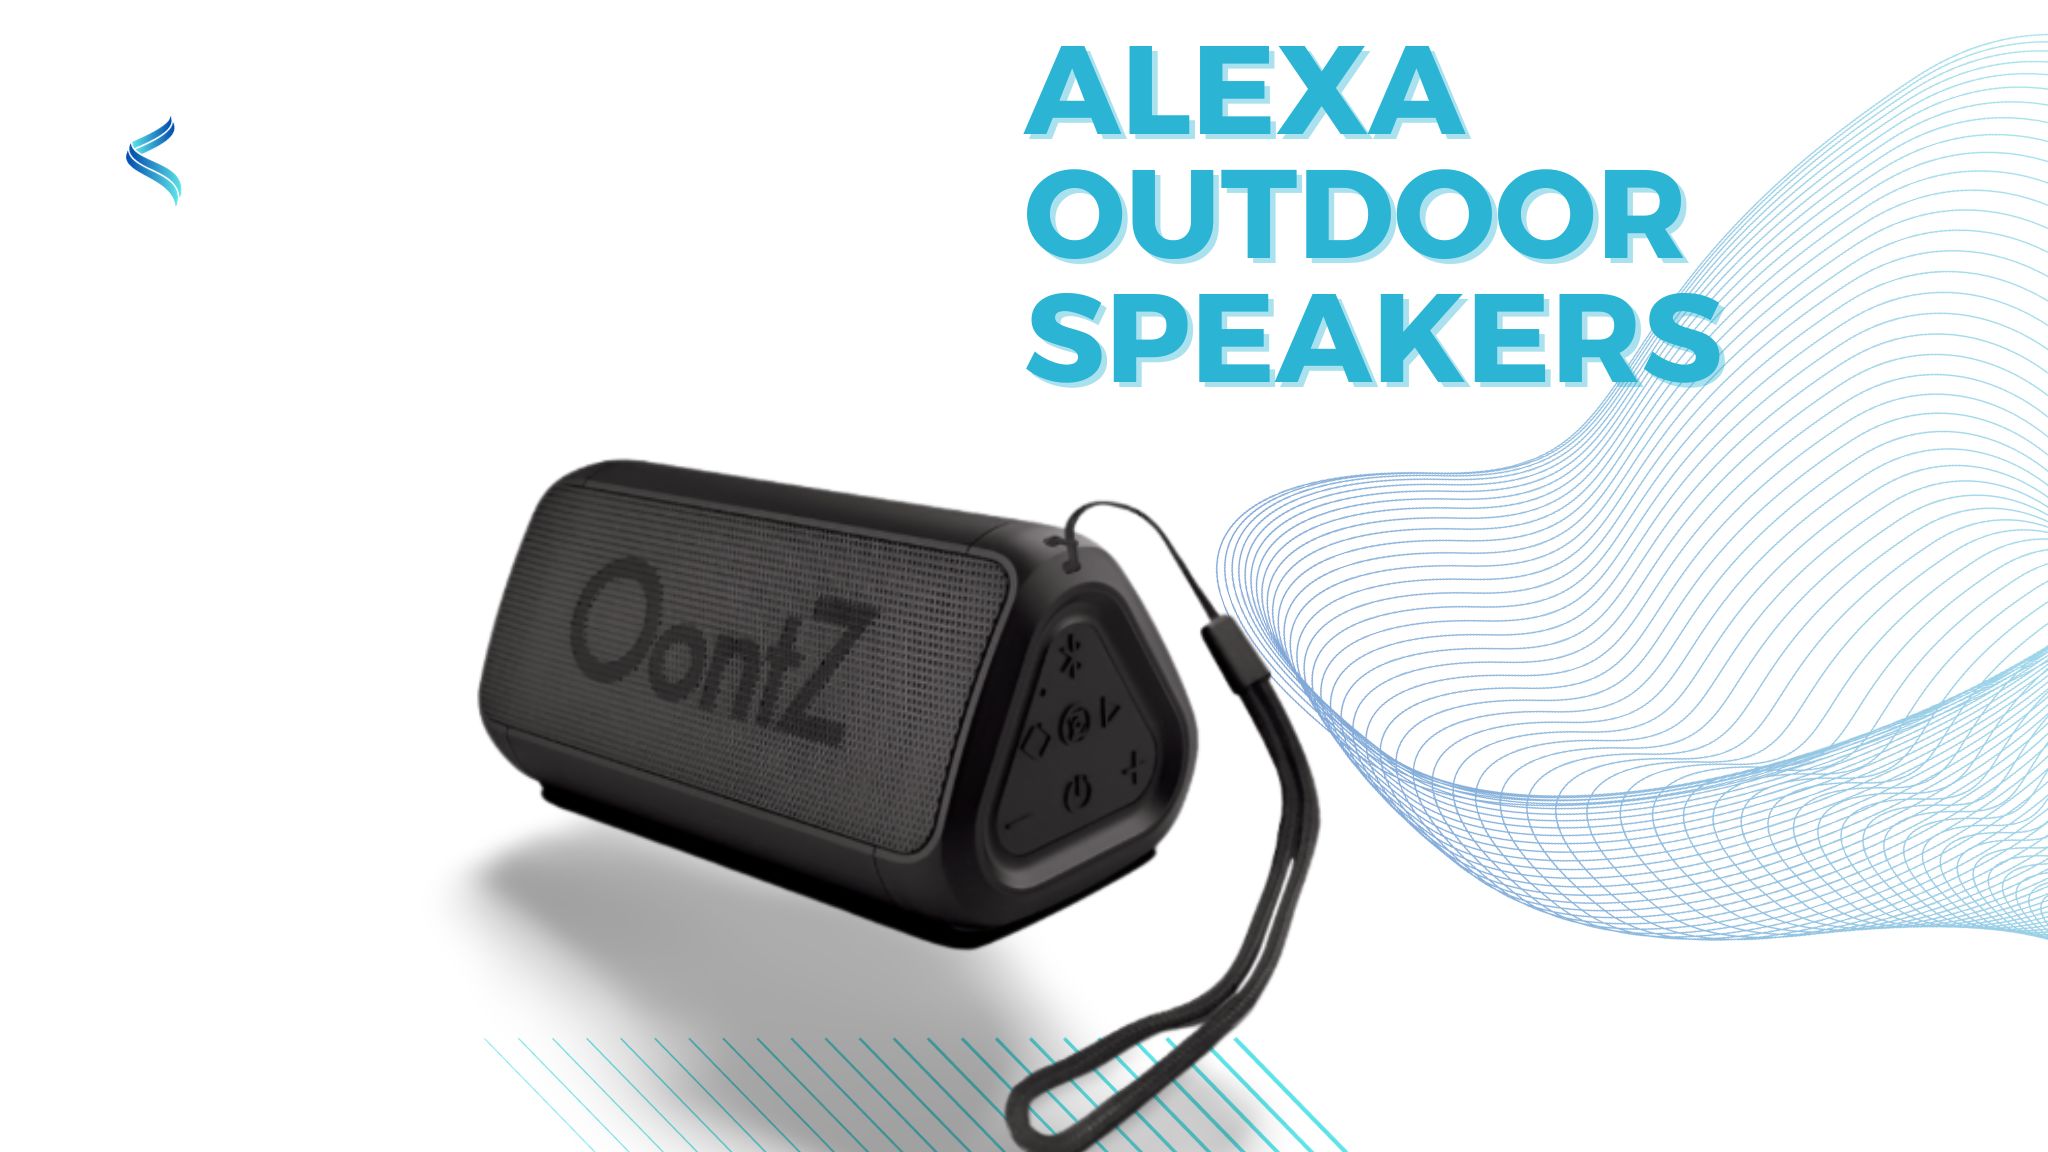 Alexa outdoor speakers